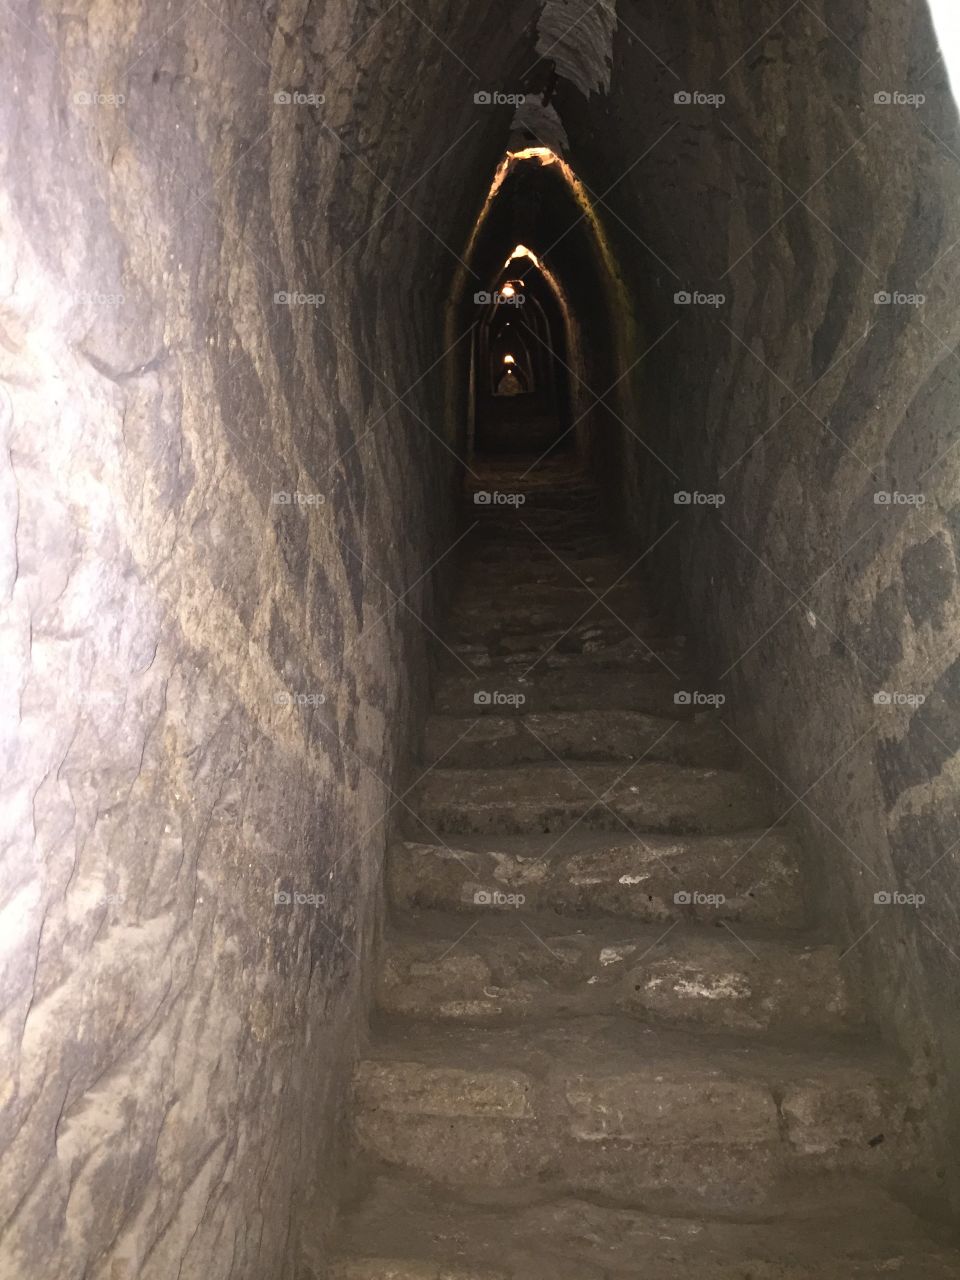 Tunel de cholula 